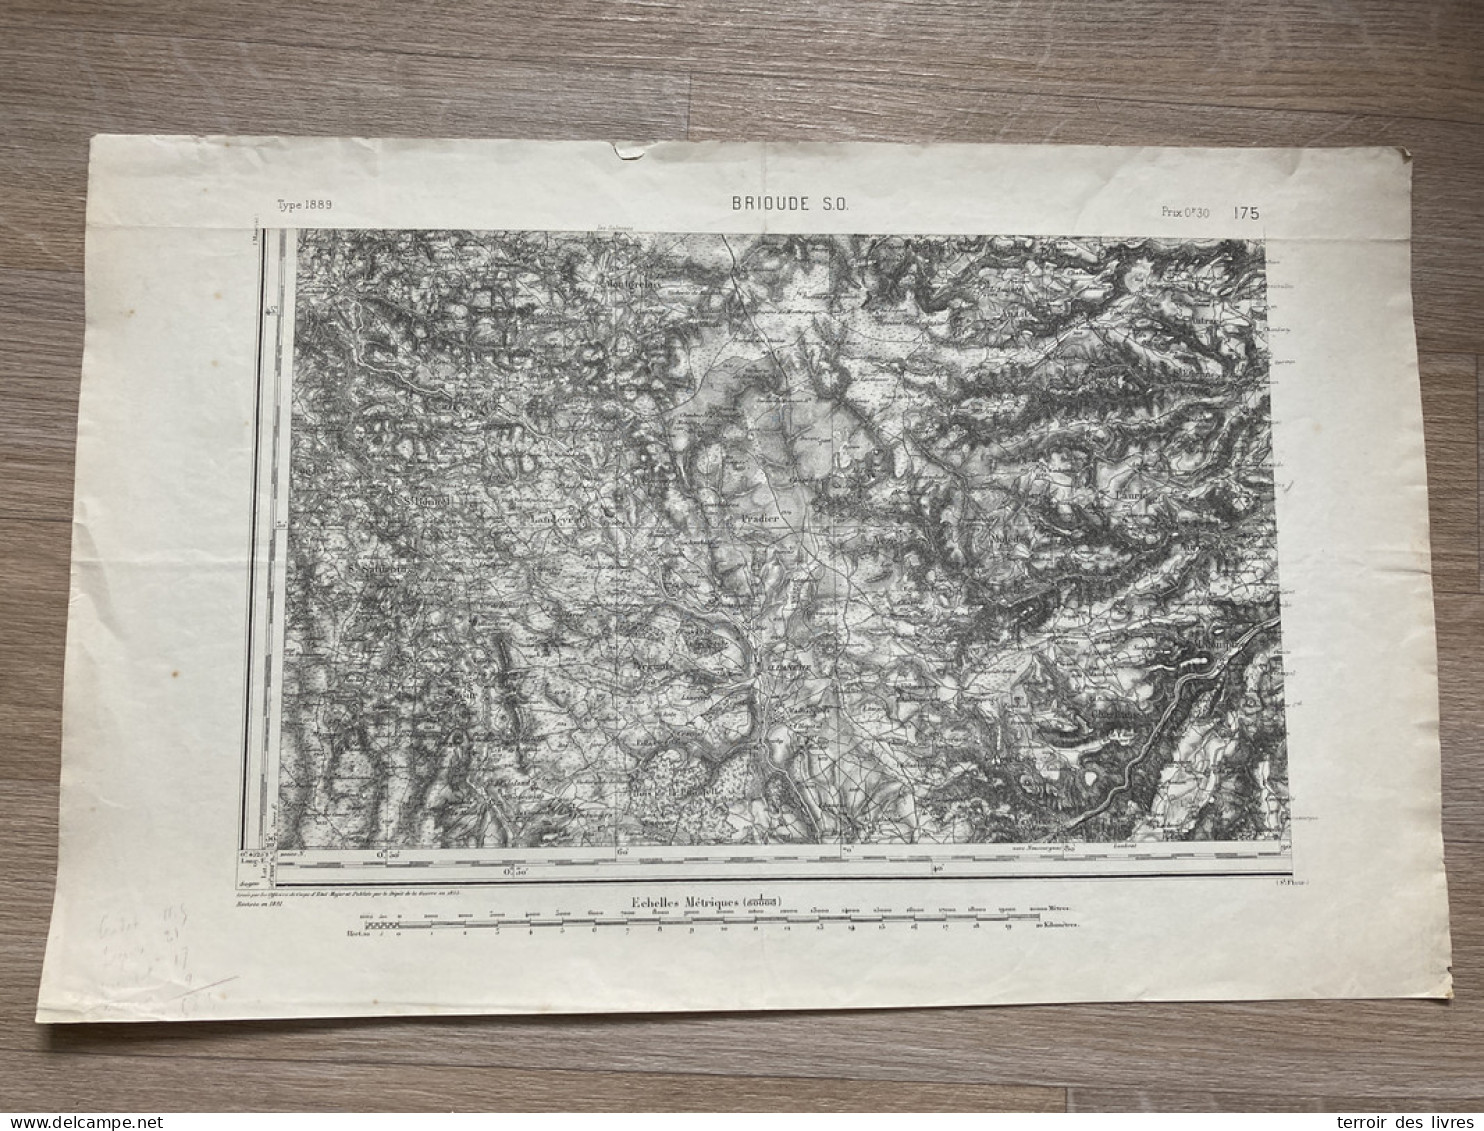 Carte état Major BRIOUDE S.O. 1855 1891 35x54cm PRADIER LANDEYRAT ALLANCHE VEZE VERNOLS MARCENAT MOLEDES MONTGRELEIX SEG - Geographical Maps